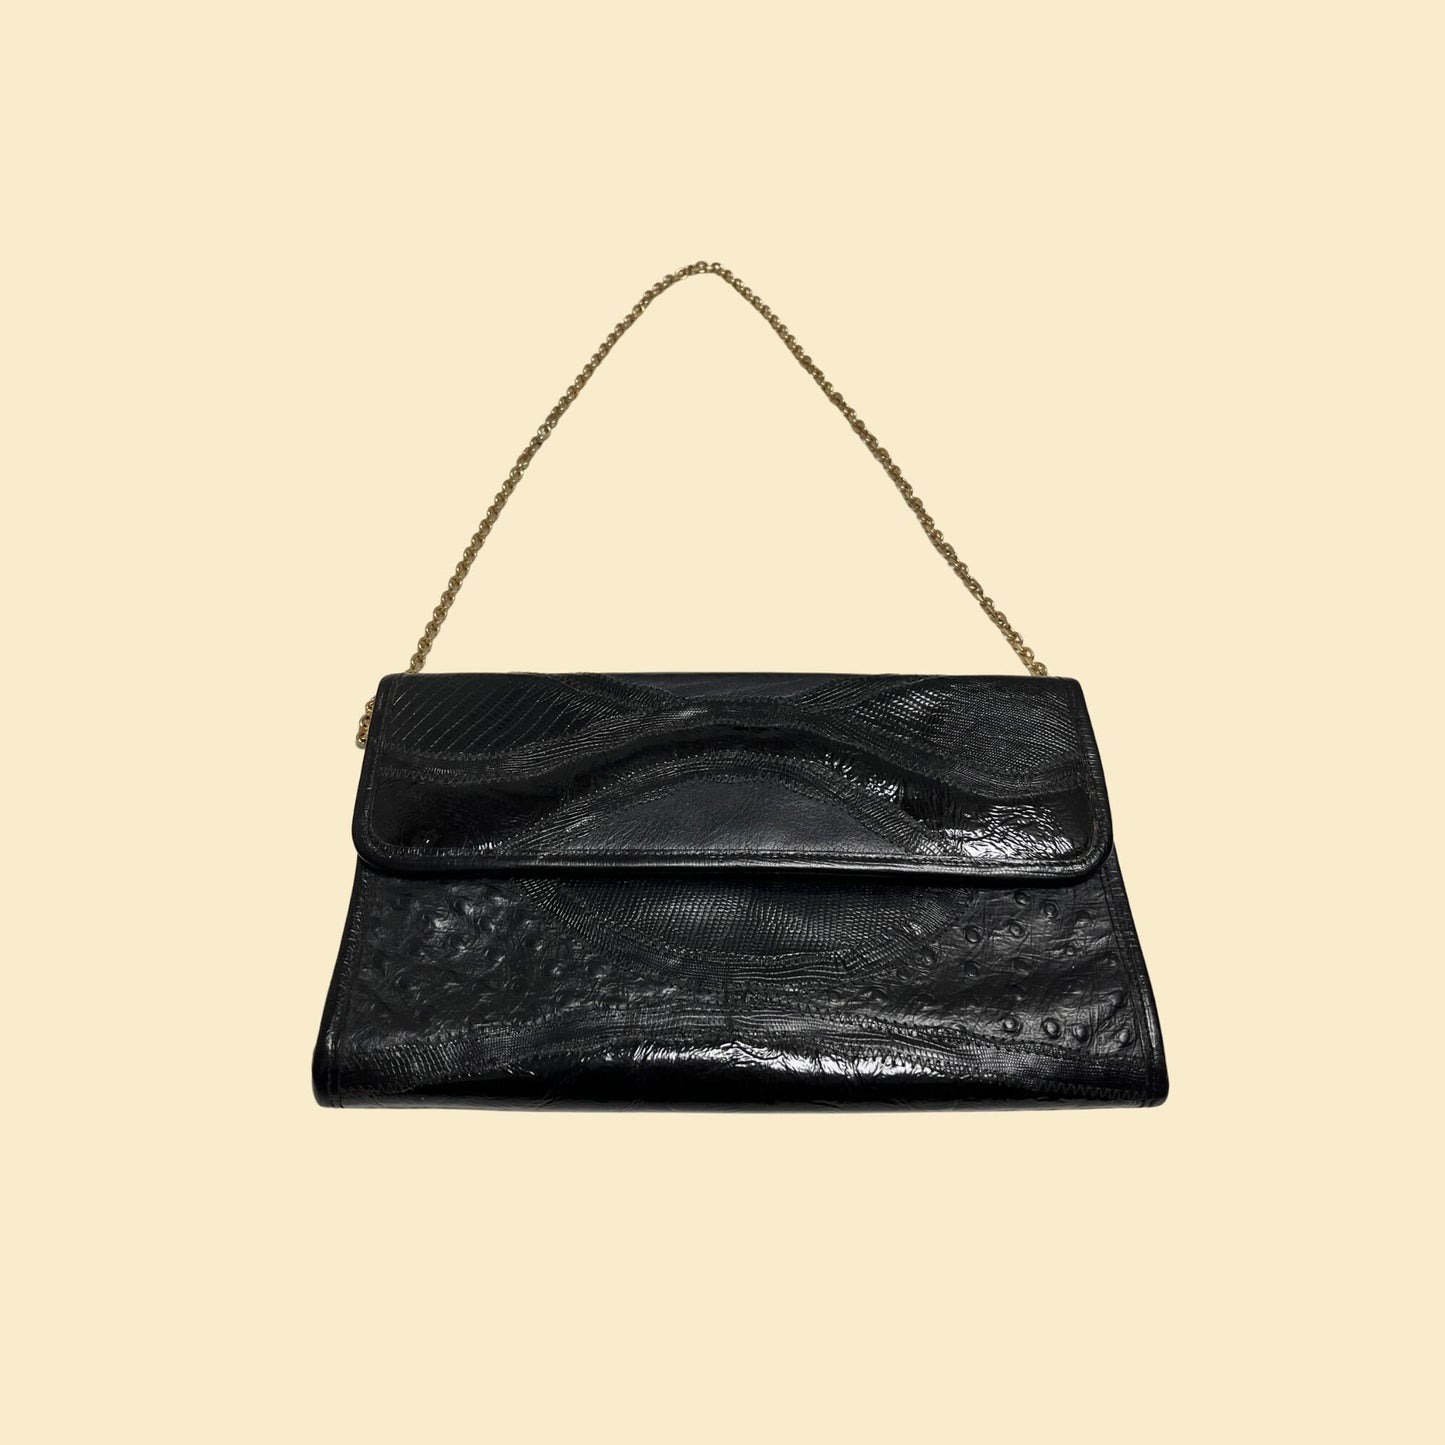 70s black leather clutch with shoulder strap, vintage envelope shoulder bag with brass/gold colored hardware